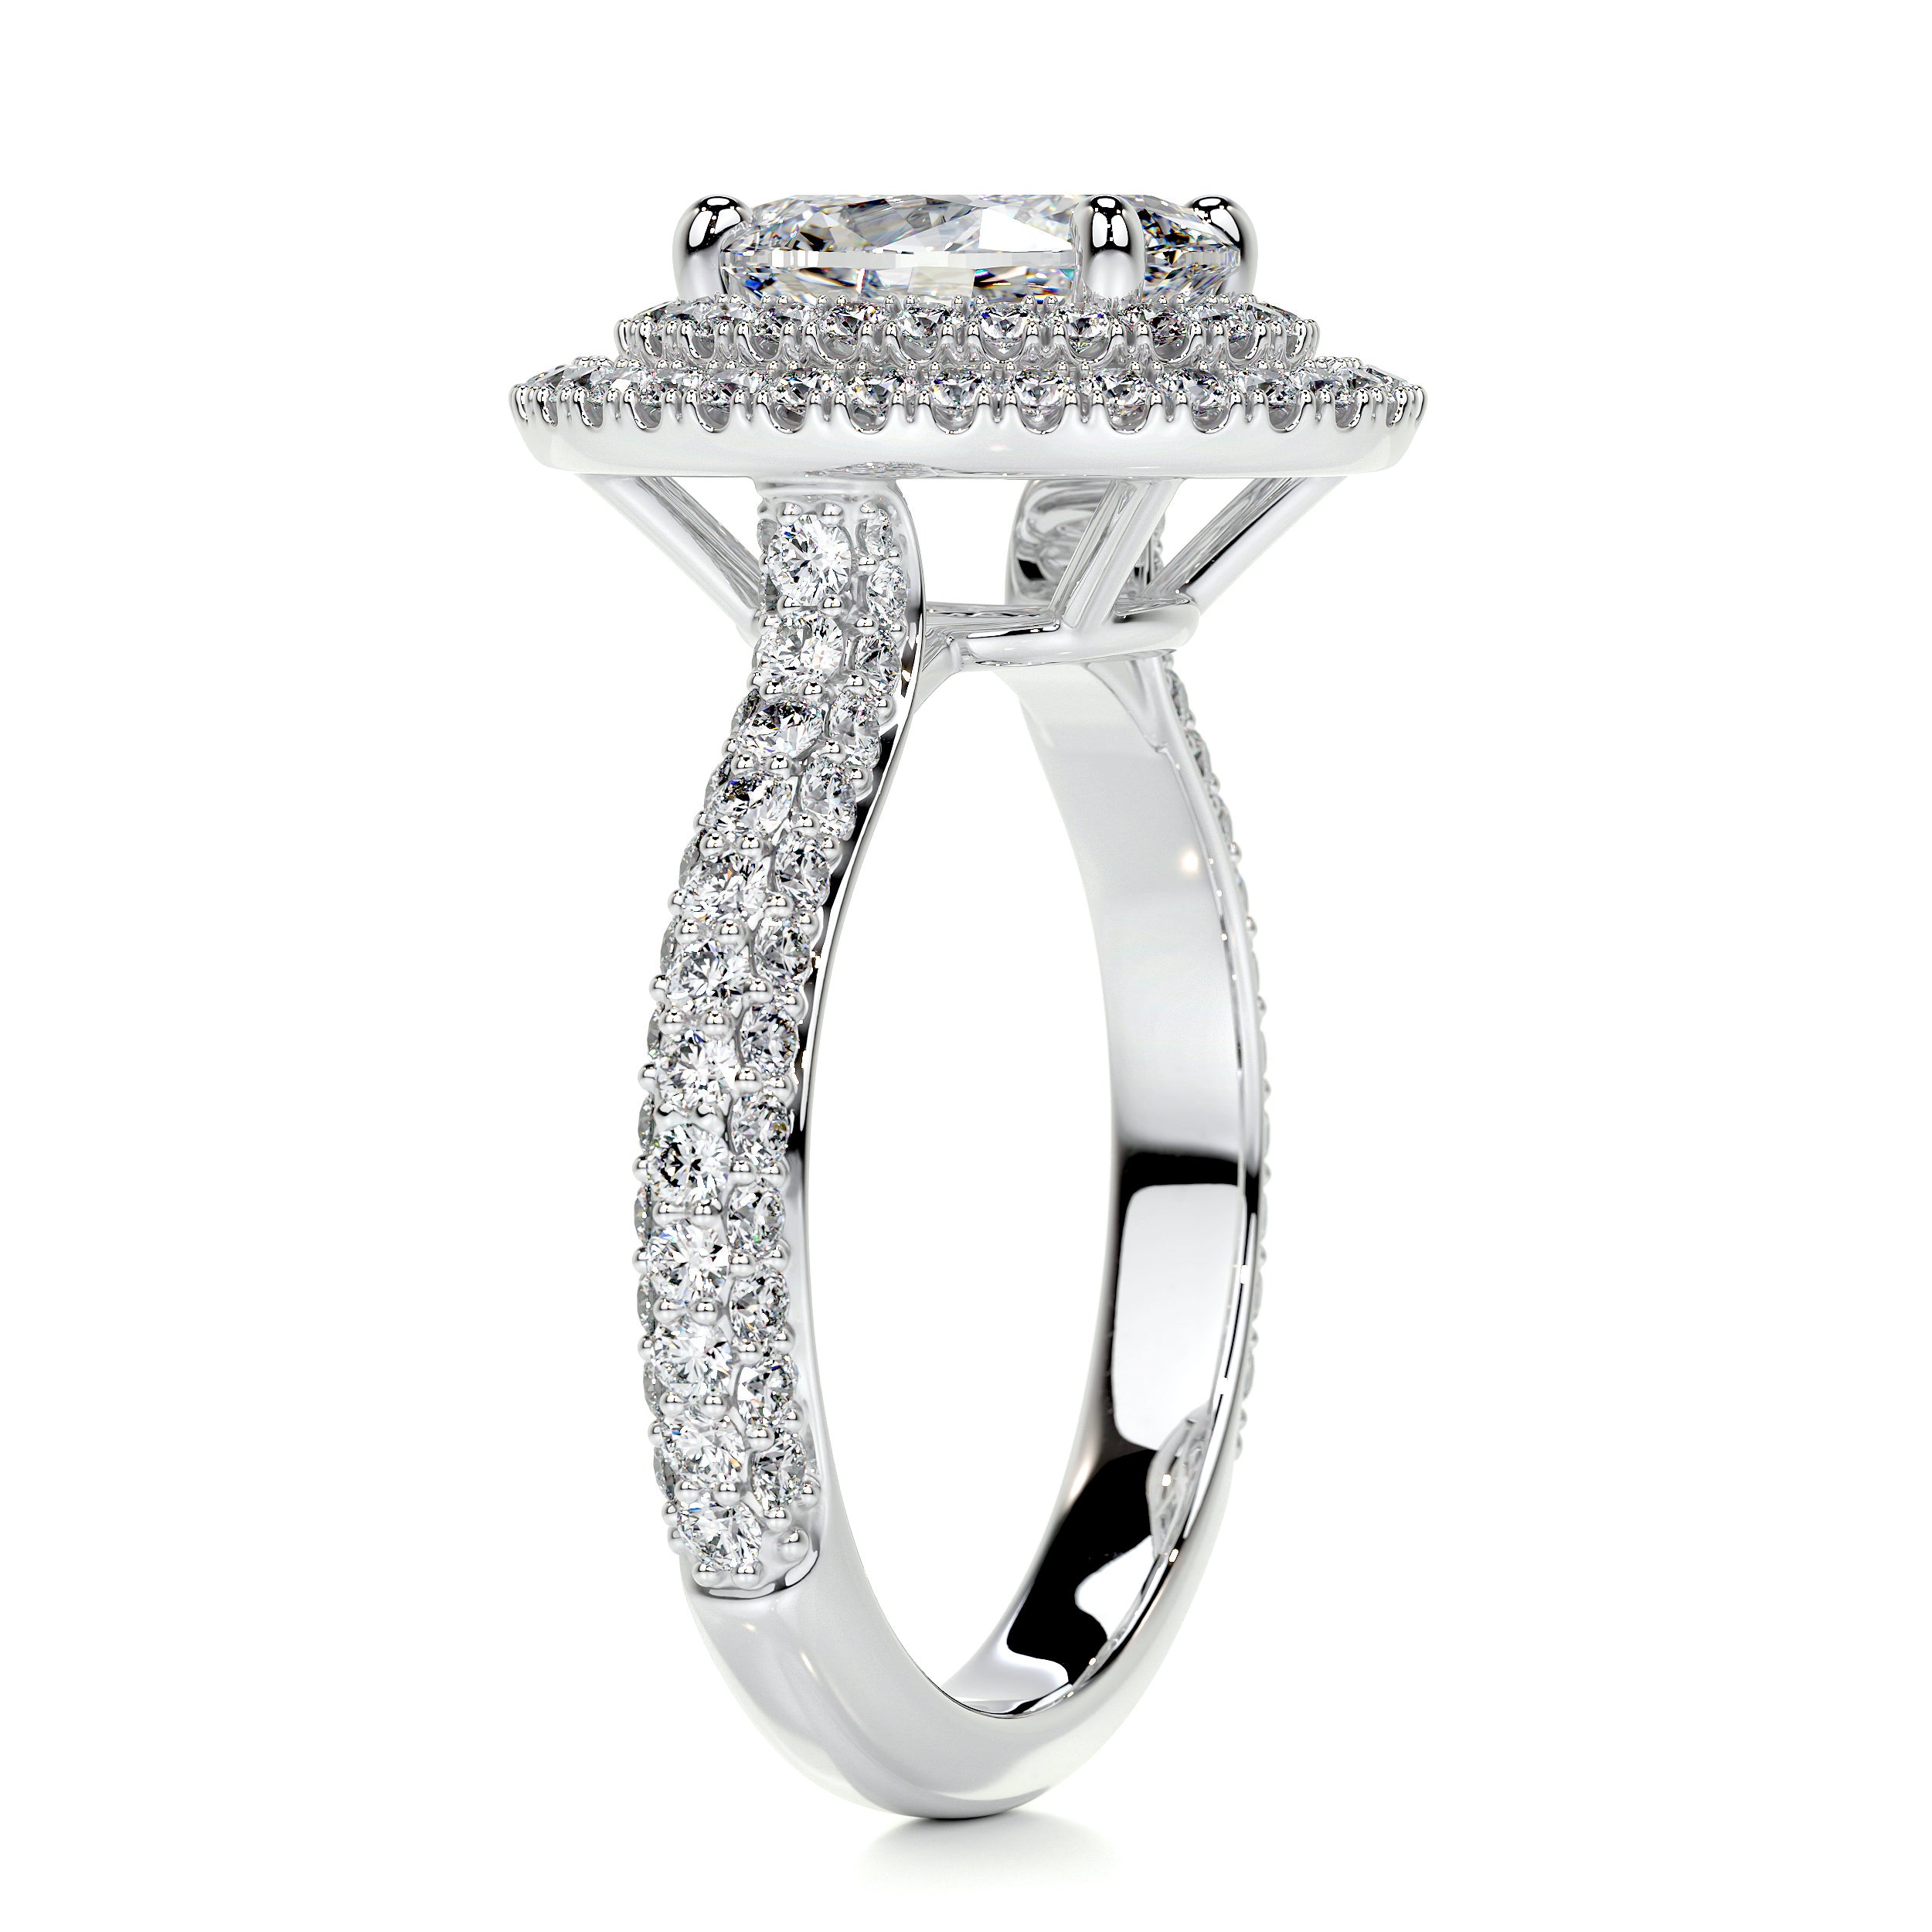 Nora Diamond Engagement Ring   (3 Carat) -14K White Gold